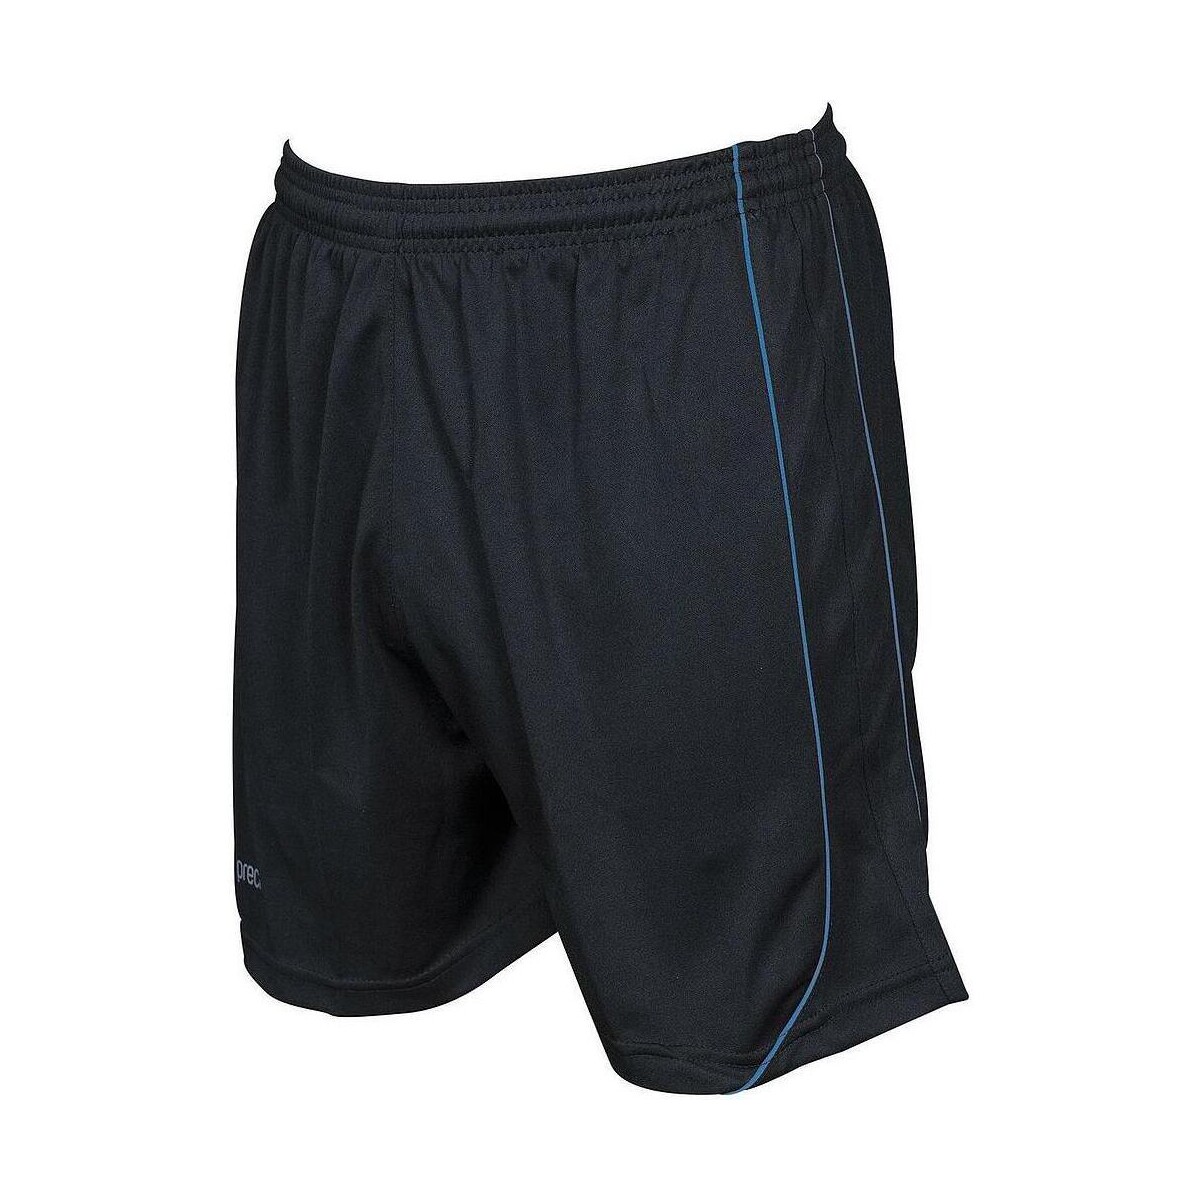 Abbigliamento Shorts / Bermuda Precision Mestalla Nero